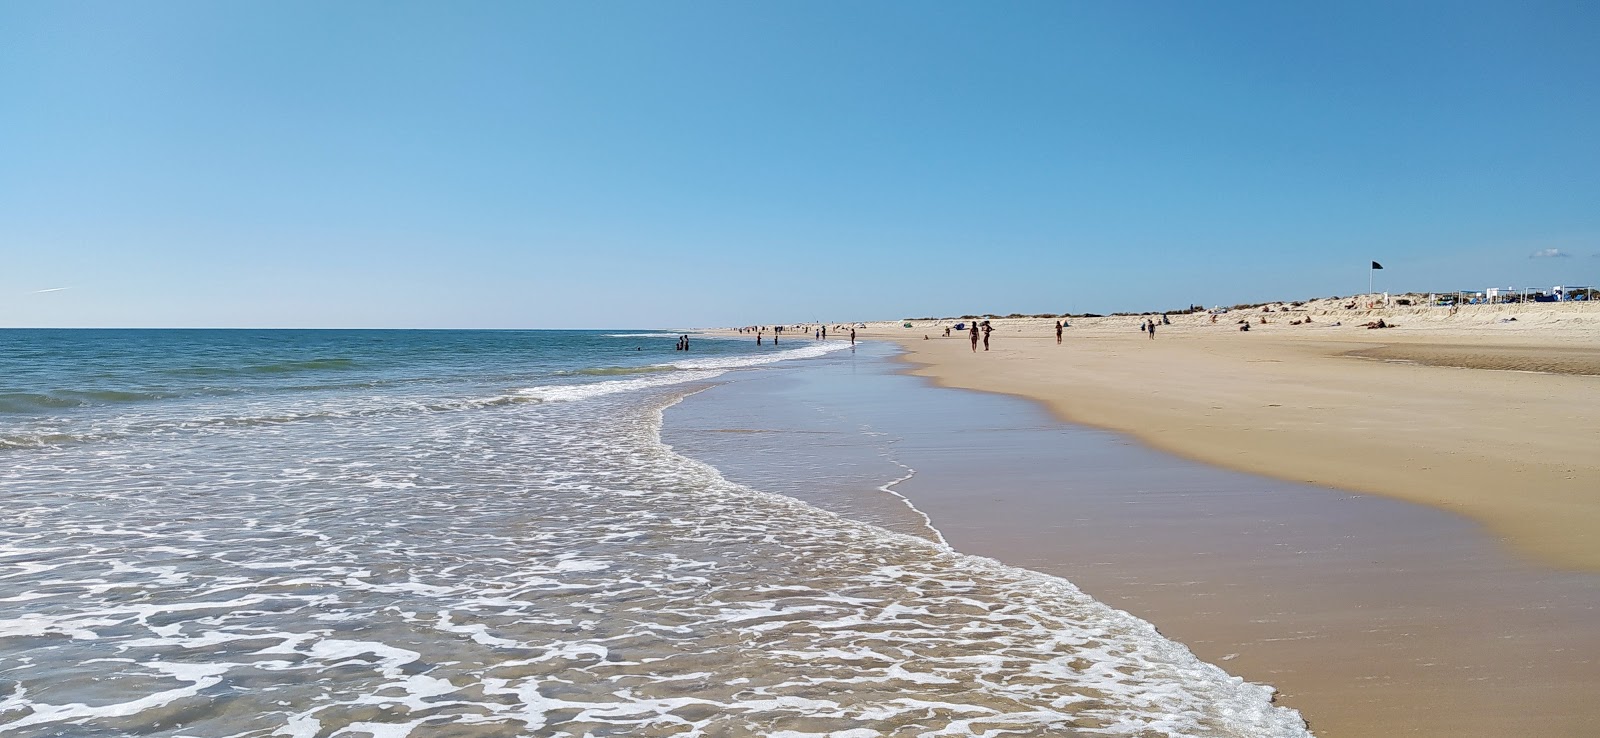 Fotografija Barril plaža z beli fini pesek površino